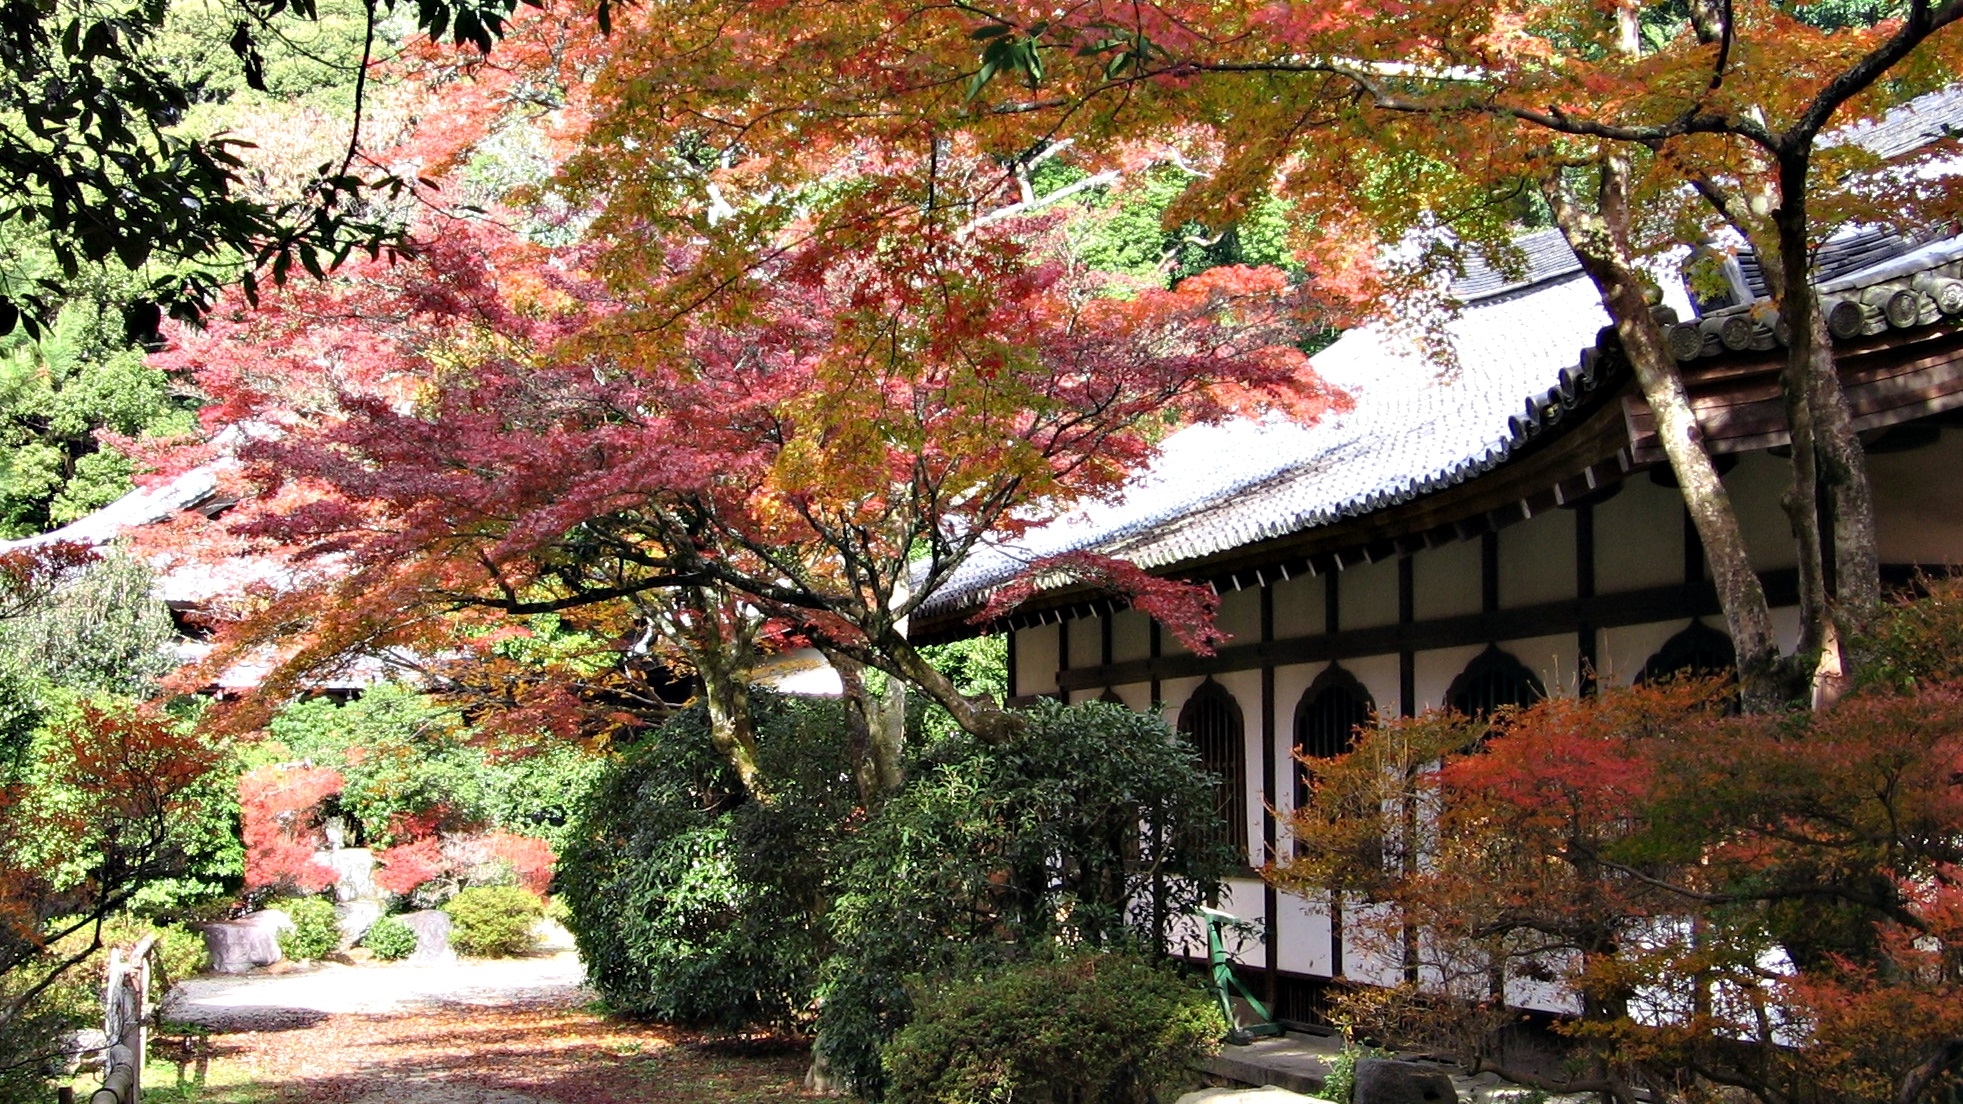  Un paseo imperdible por el Japón de los cerezos en flor